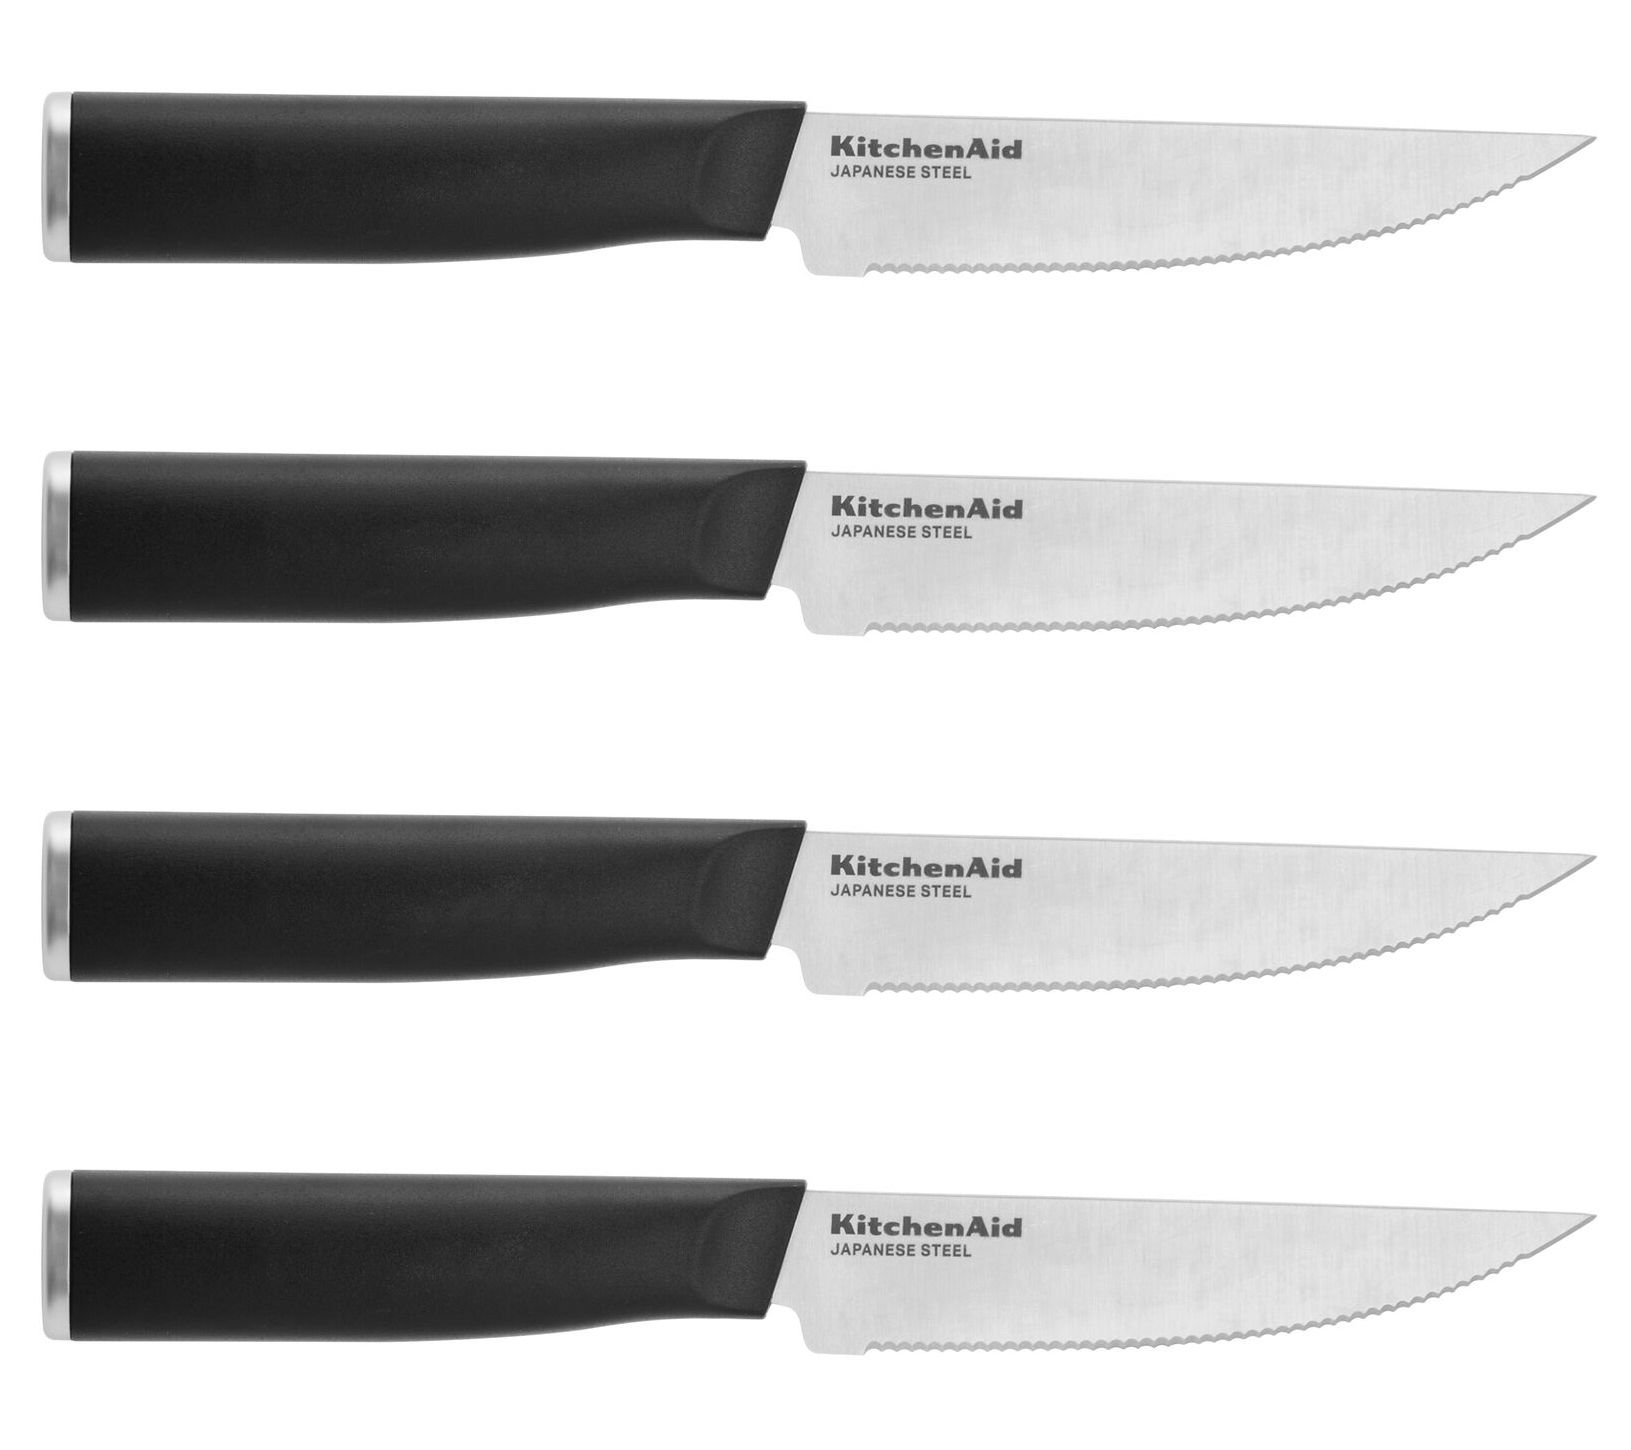 Emojoy Steak Knife Set of 2 Non Serrated Steak Knives Stainless